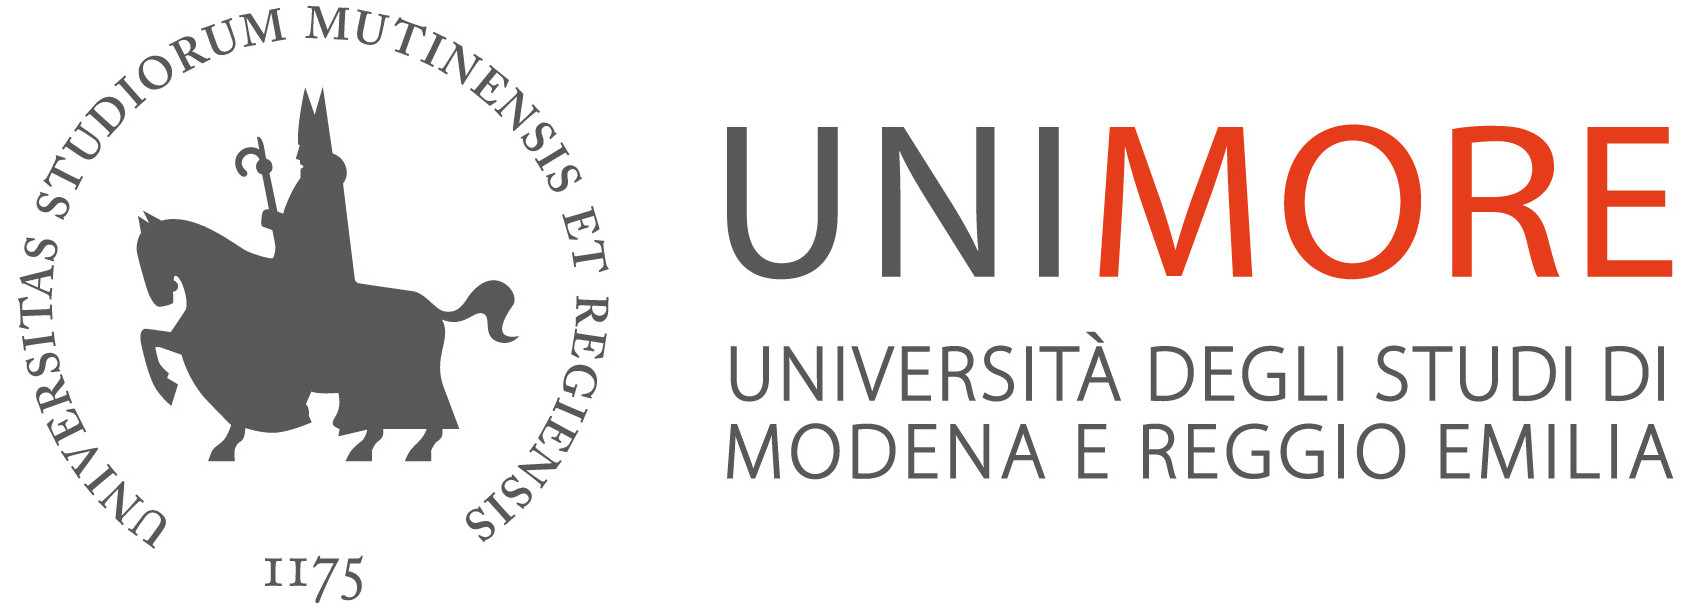 Università di Modena e Reggio Emilia - Unimore